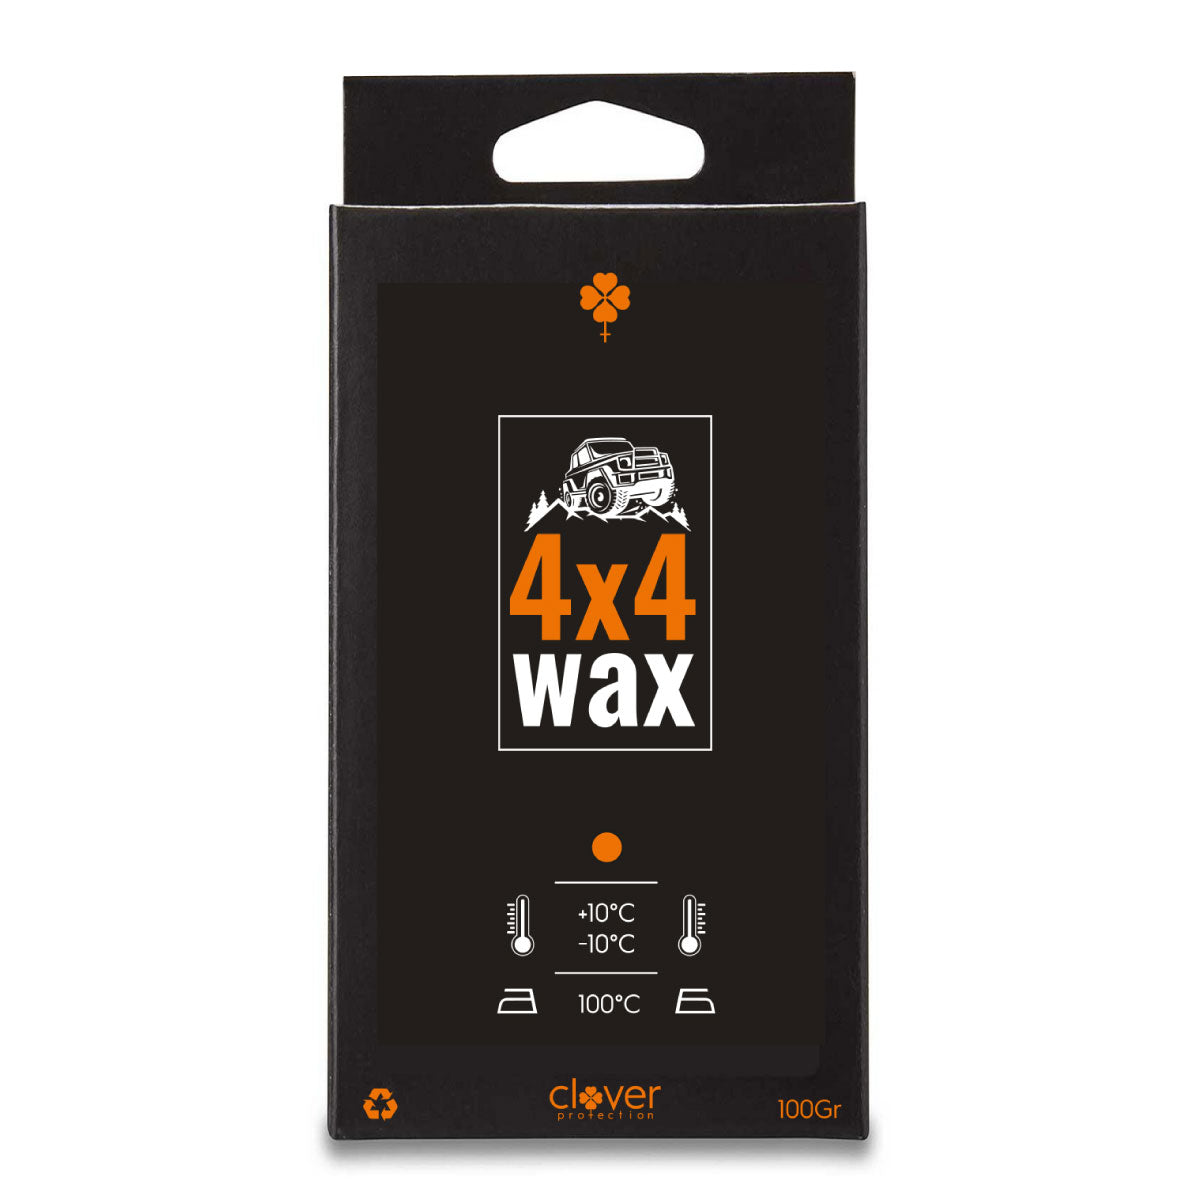 4x4 Wax - PRE ORDER